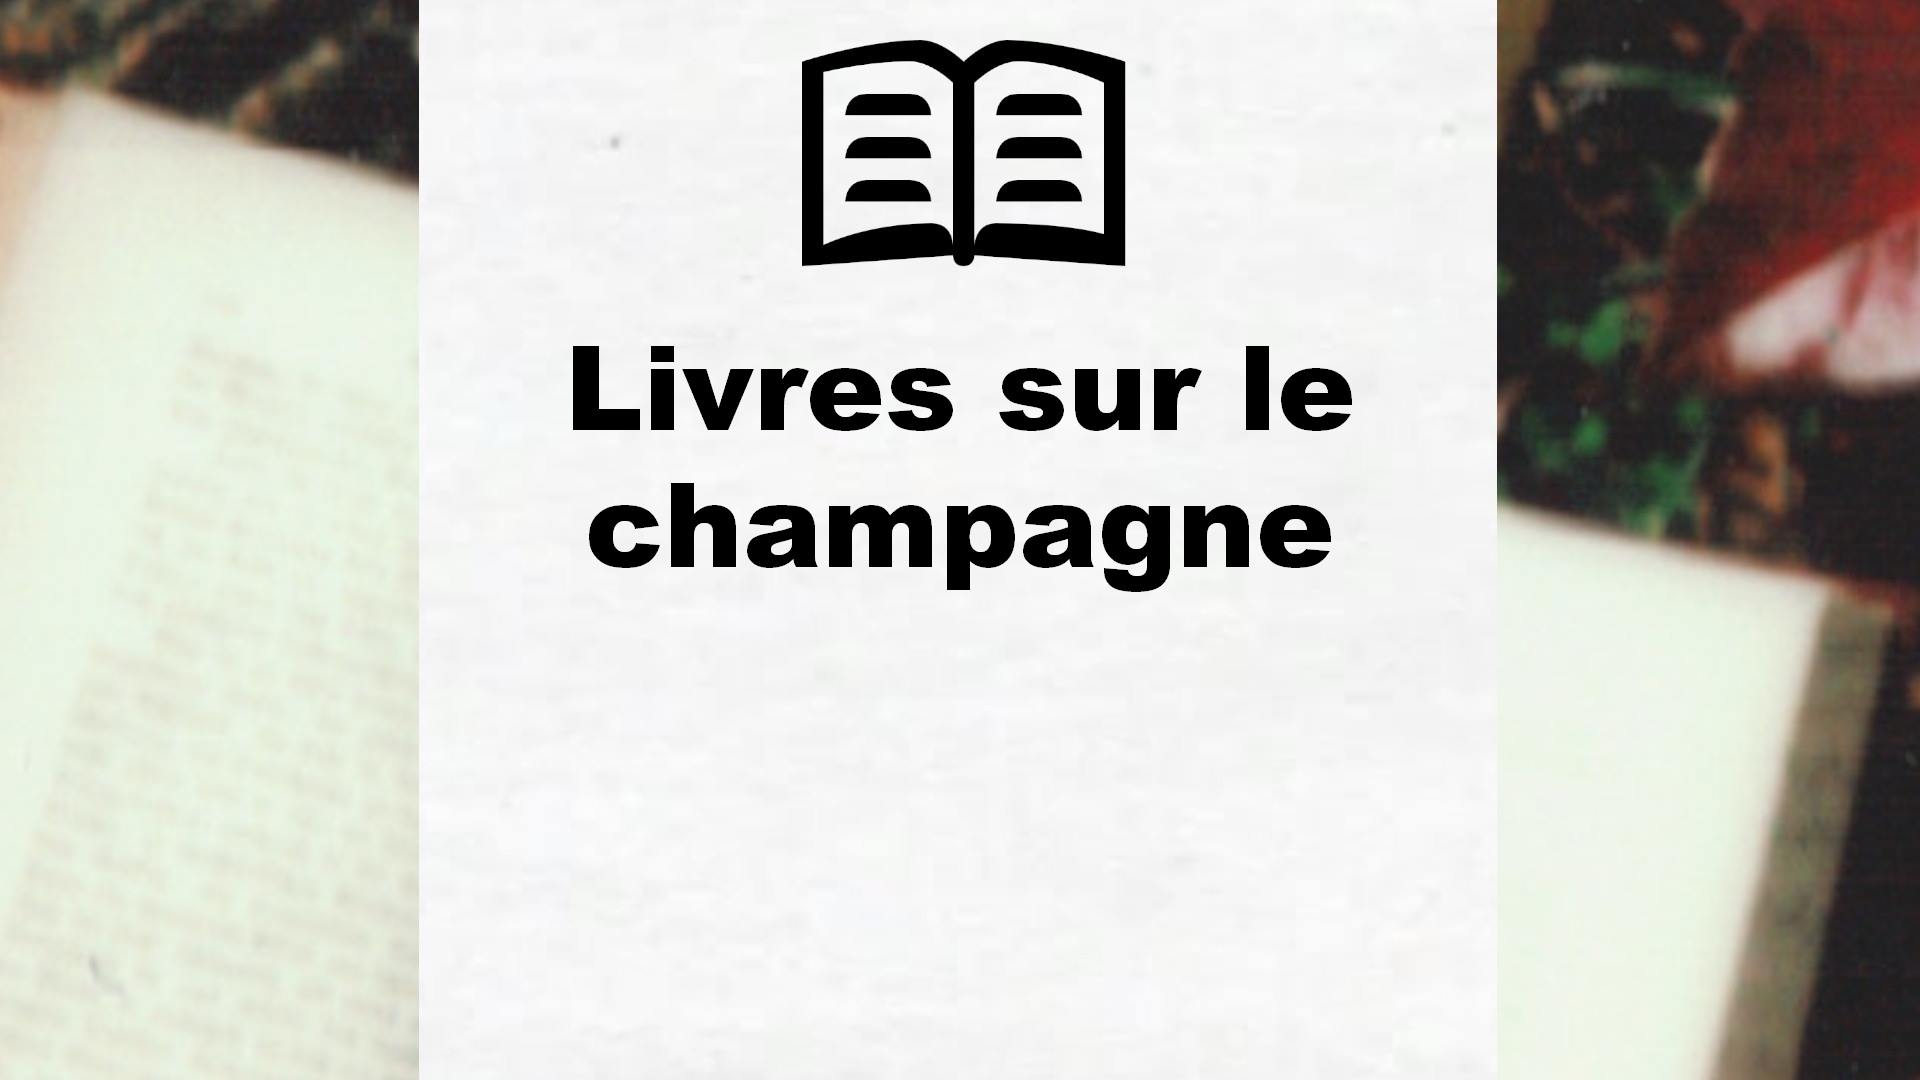 Livres sur le champagne